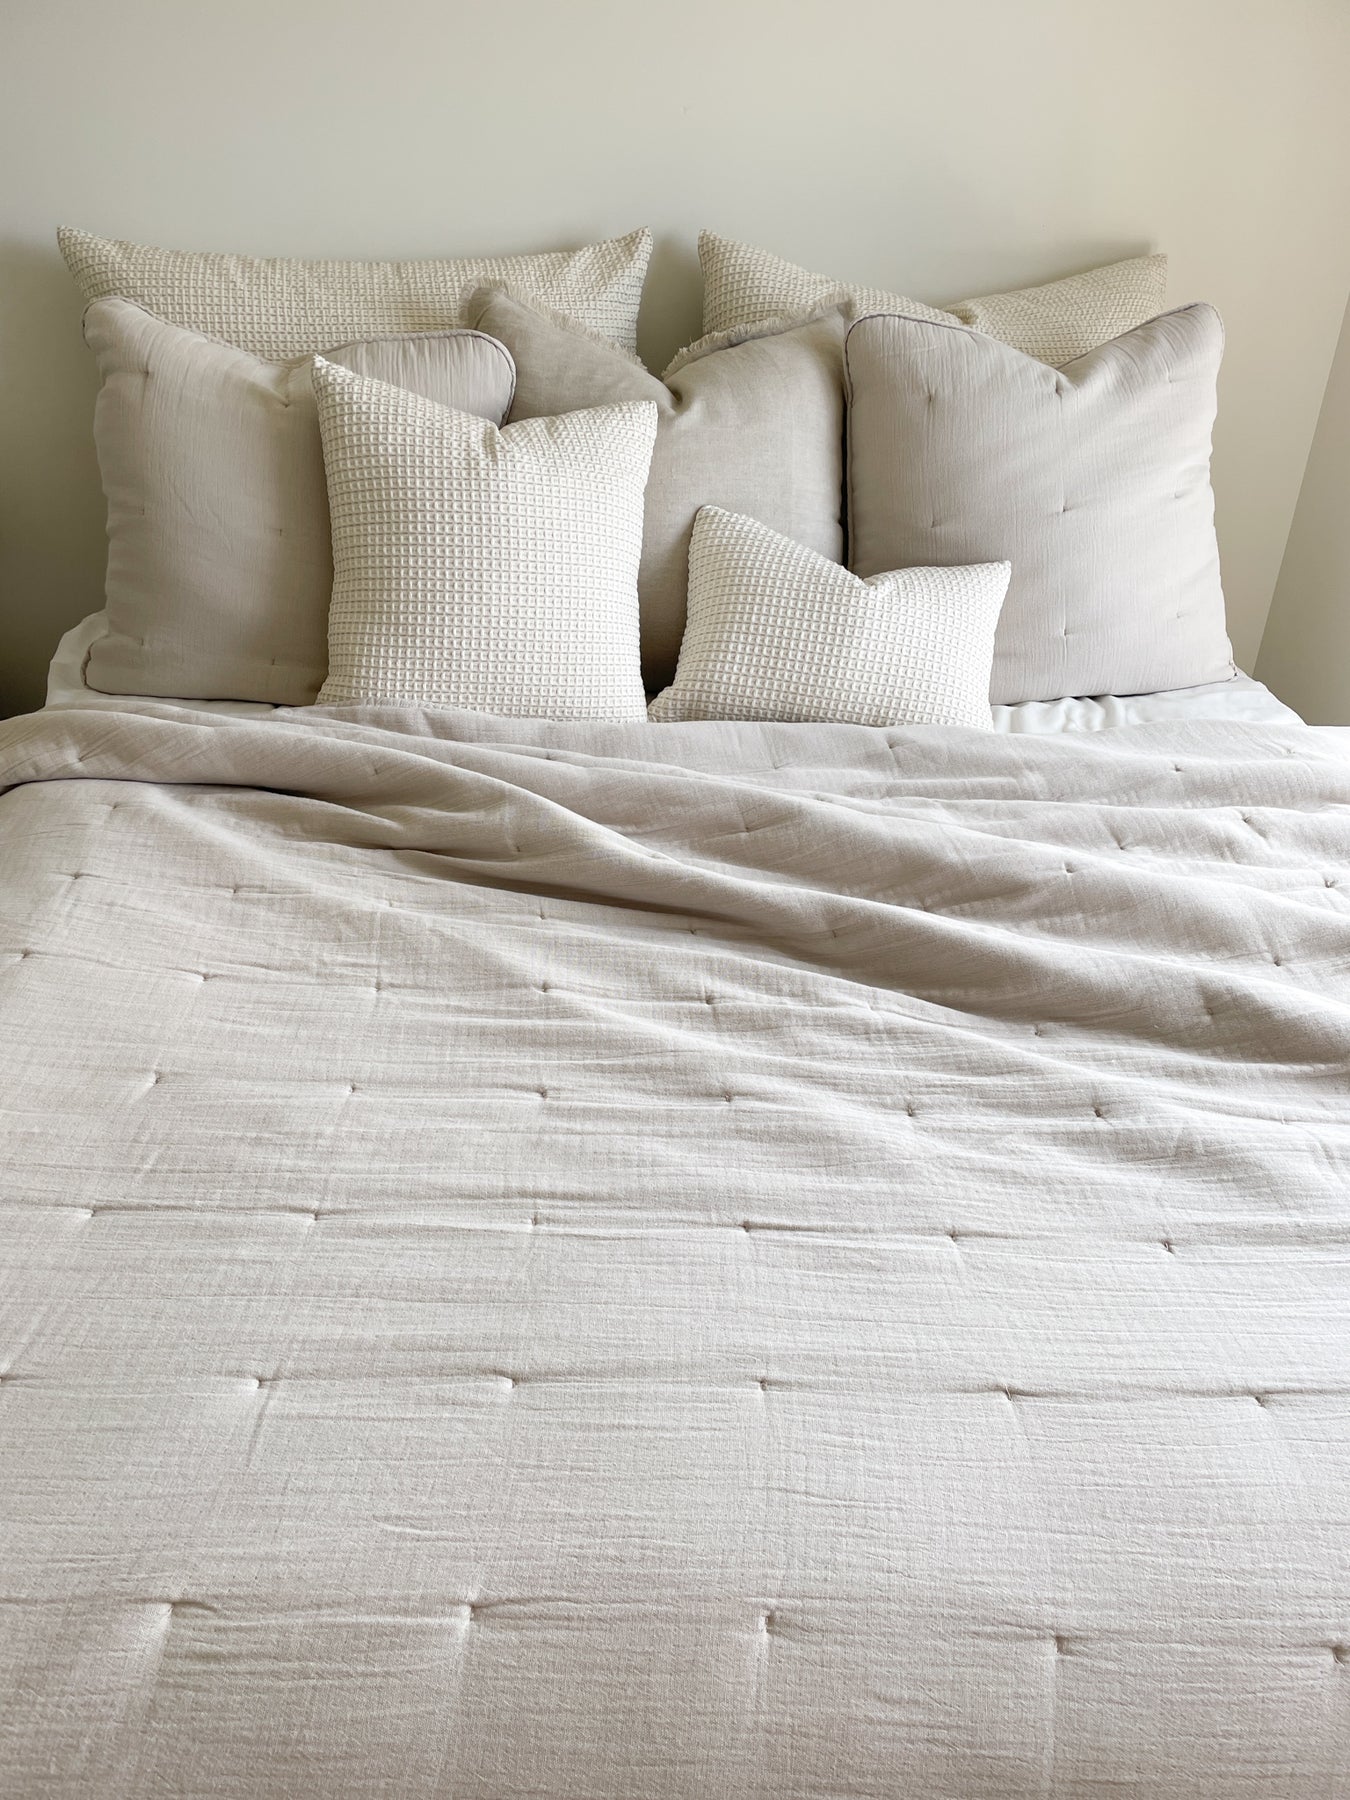 YOMDID Granular Stuffing Cotton DIY Stuffing Clothing Quilt Pillow